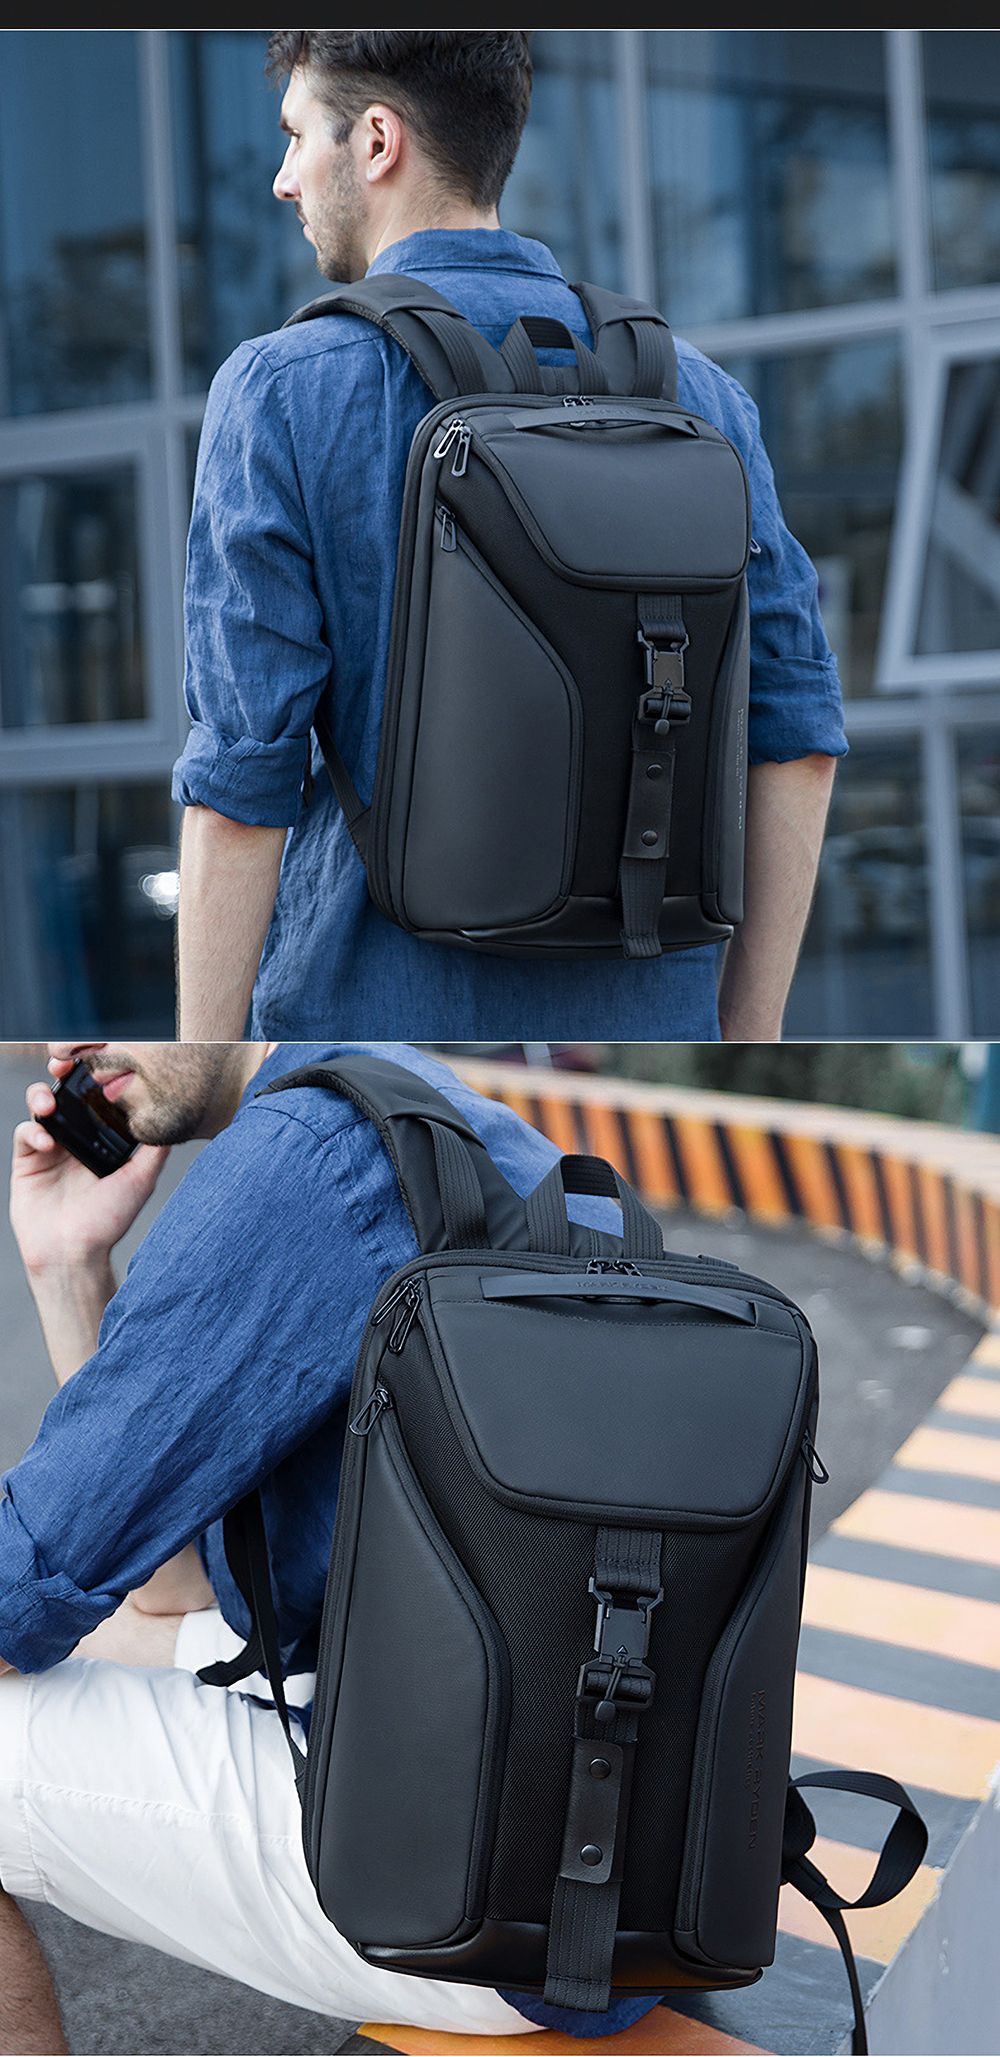 Mark-Ryden-MR9369-Business-Backpack-Laptop-Bag-Shoulder-Bag-Men-Travel-Storage-Bag-Opened-180deg--fo-1732651